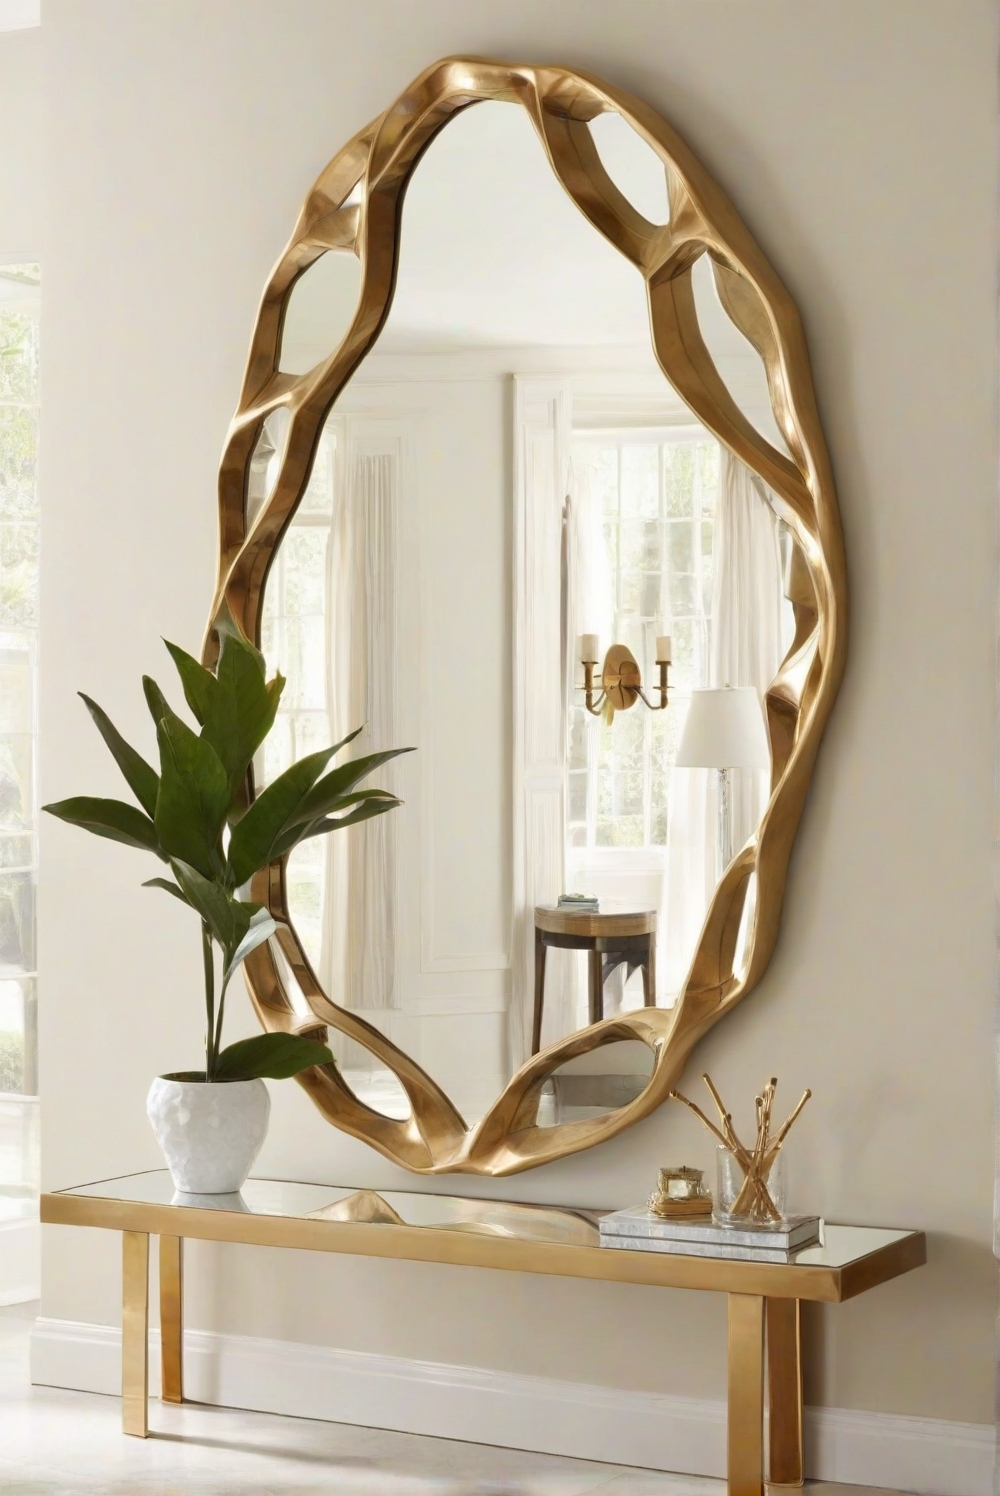 mirror reflection, unique home decor, contemporary interior design, designer wall mirrors, modern decor ideas, decorative mirrors, stylish mirror designs